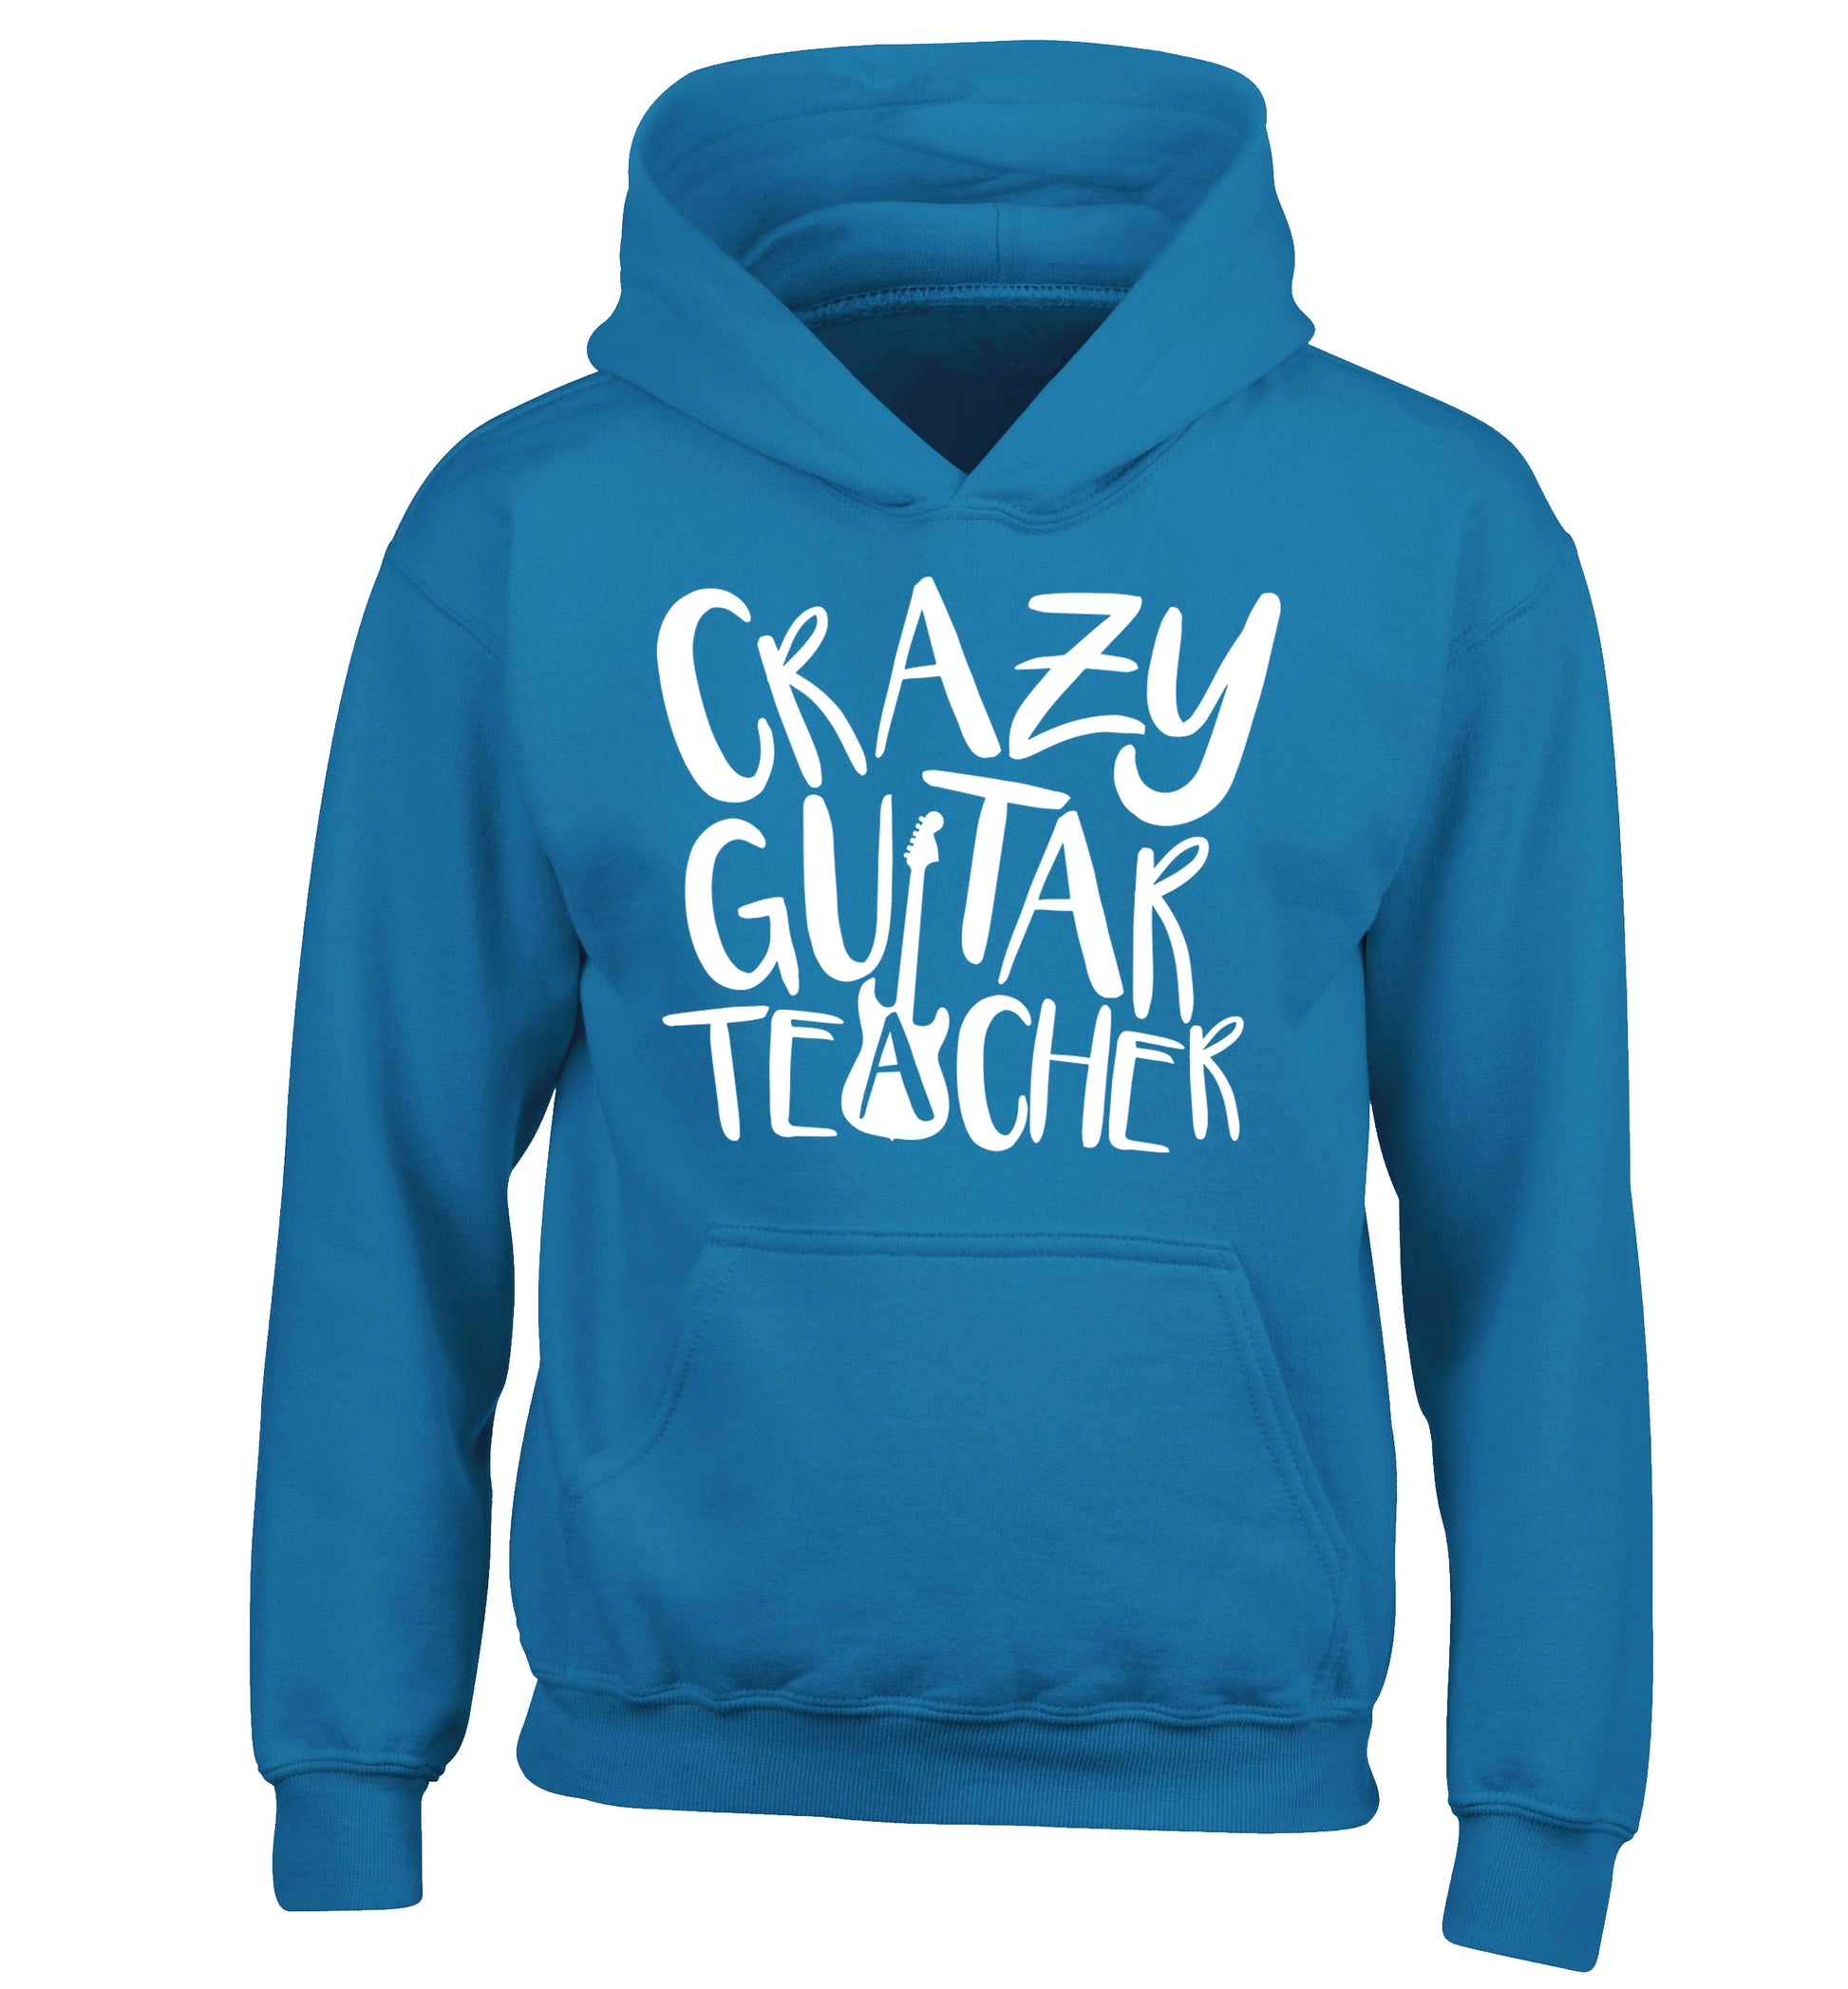 Crazy guitar teacher children's blue hoodie 12-13 Years